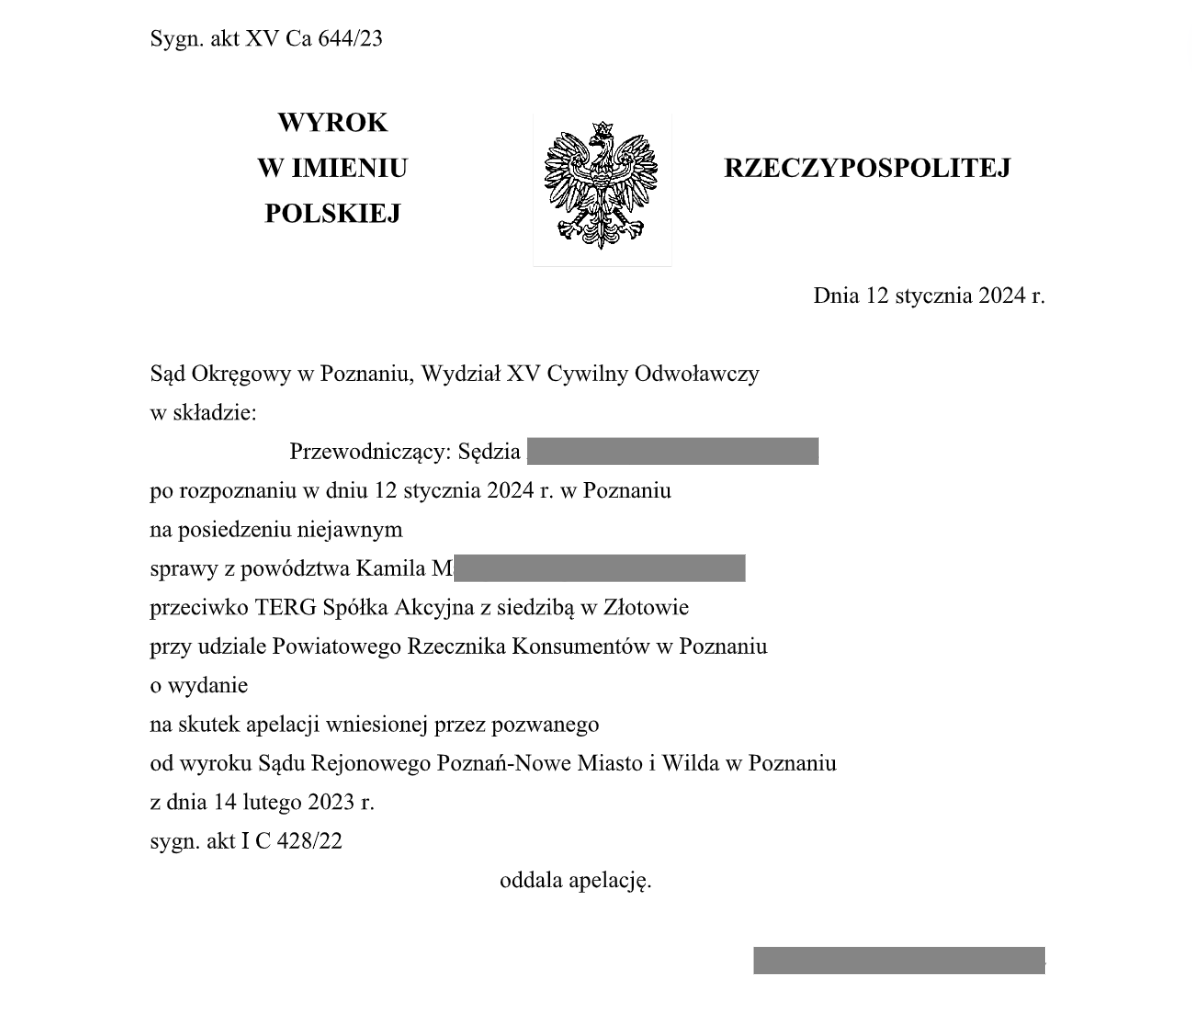 Documento judicial com uma águia coroada no cabeçalho, contendo informações sobre a sentença proferida pelo Tribunal Distrital de Poznań.